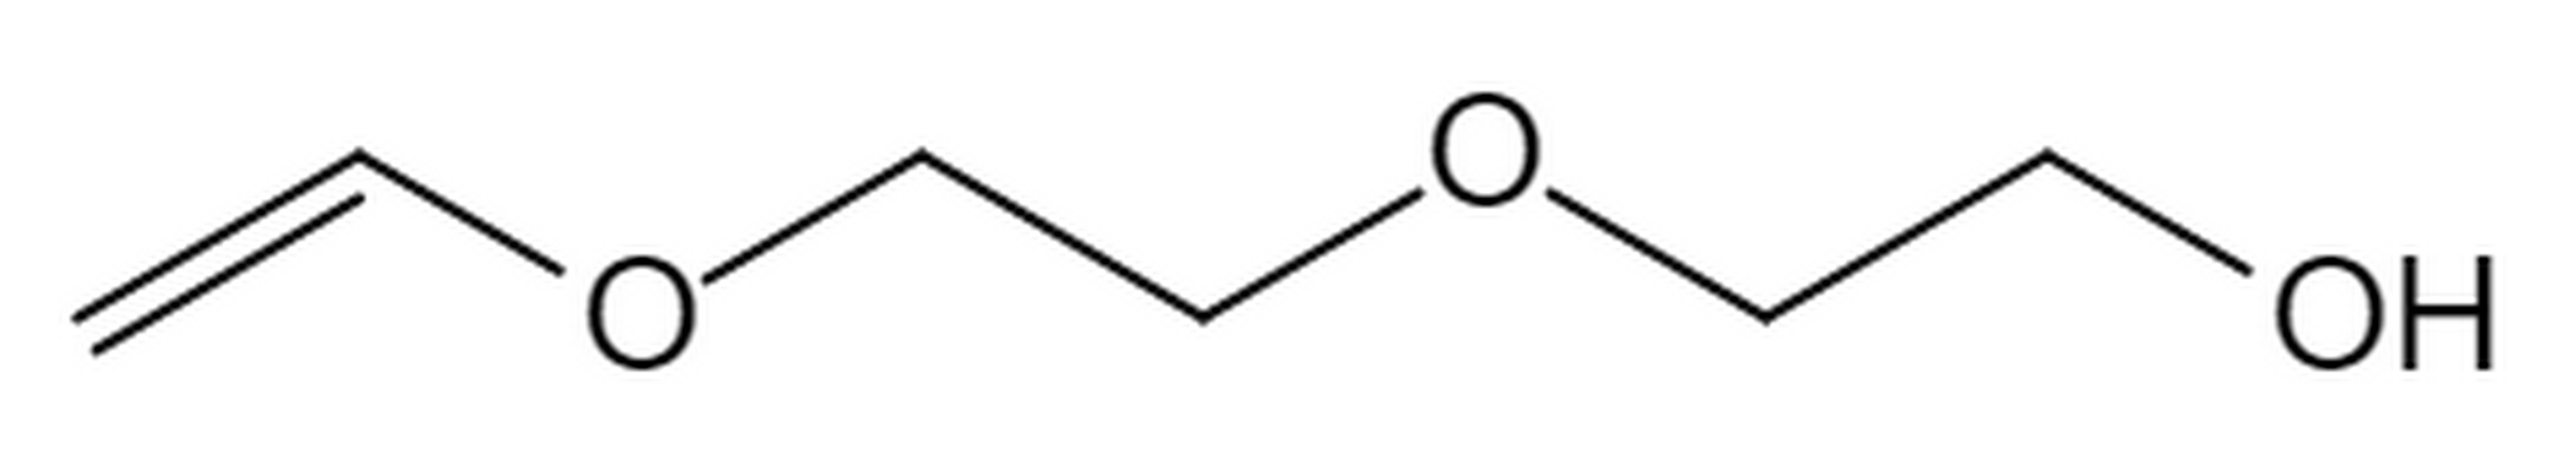 Di( ethylene glycol) monovinyl ether